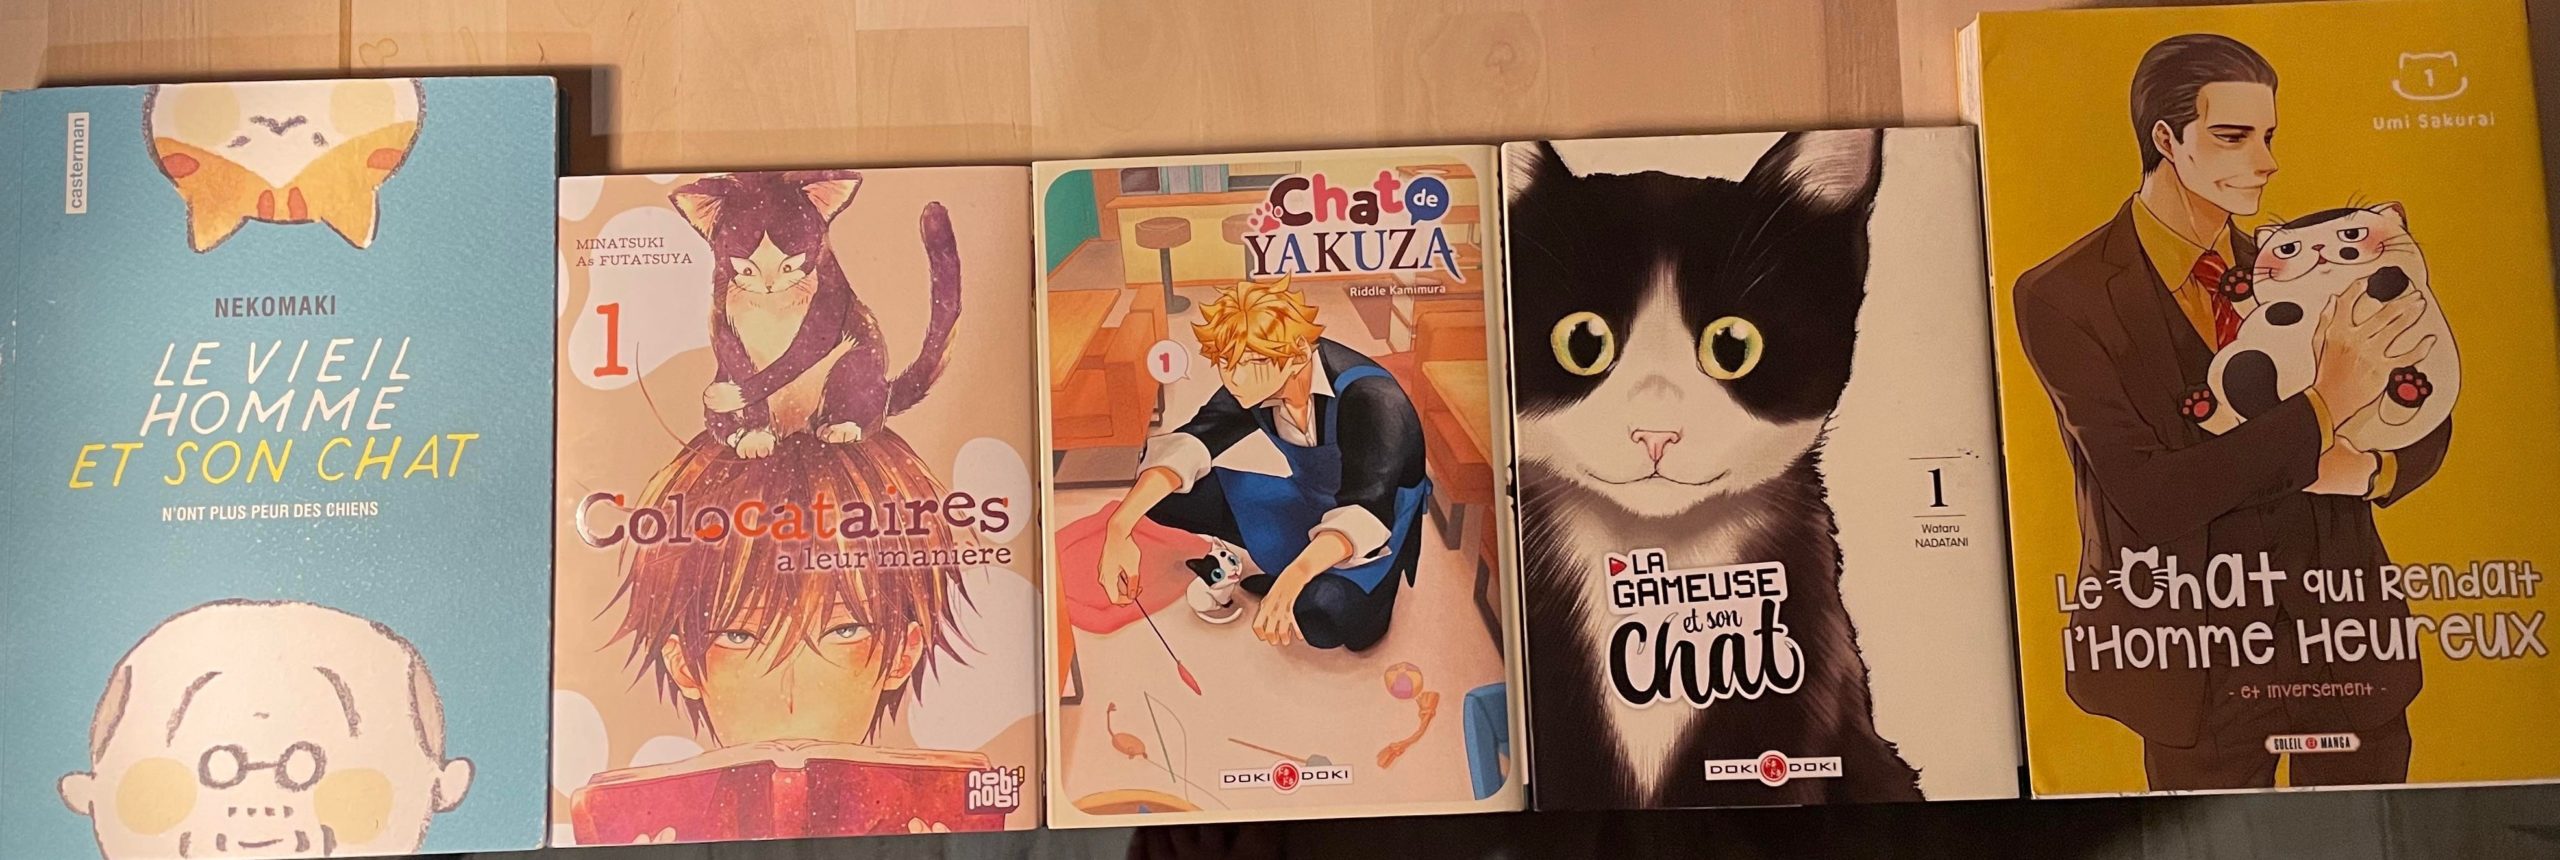 just focus cat mangas scaled Chat-perlipopette: 5 Manga pour Chat-muser avec nos amis les félins